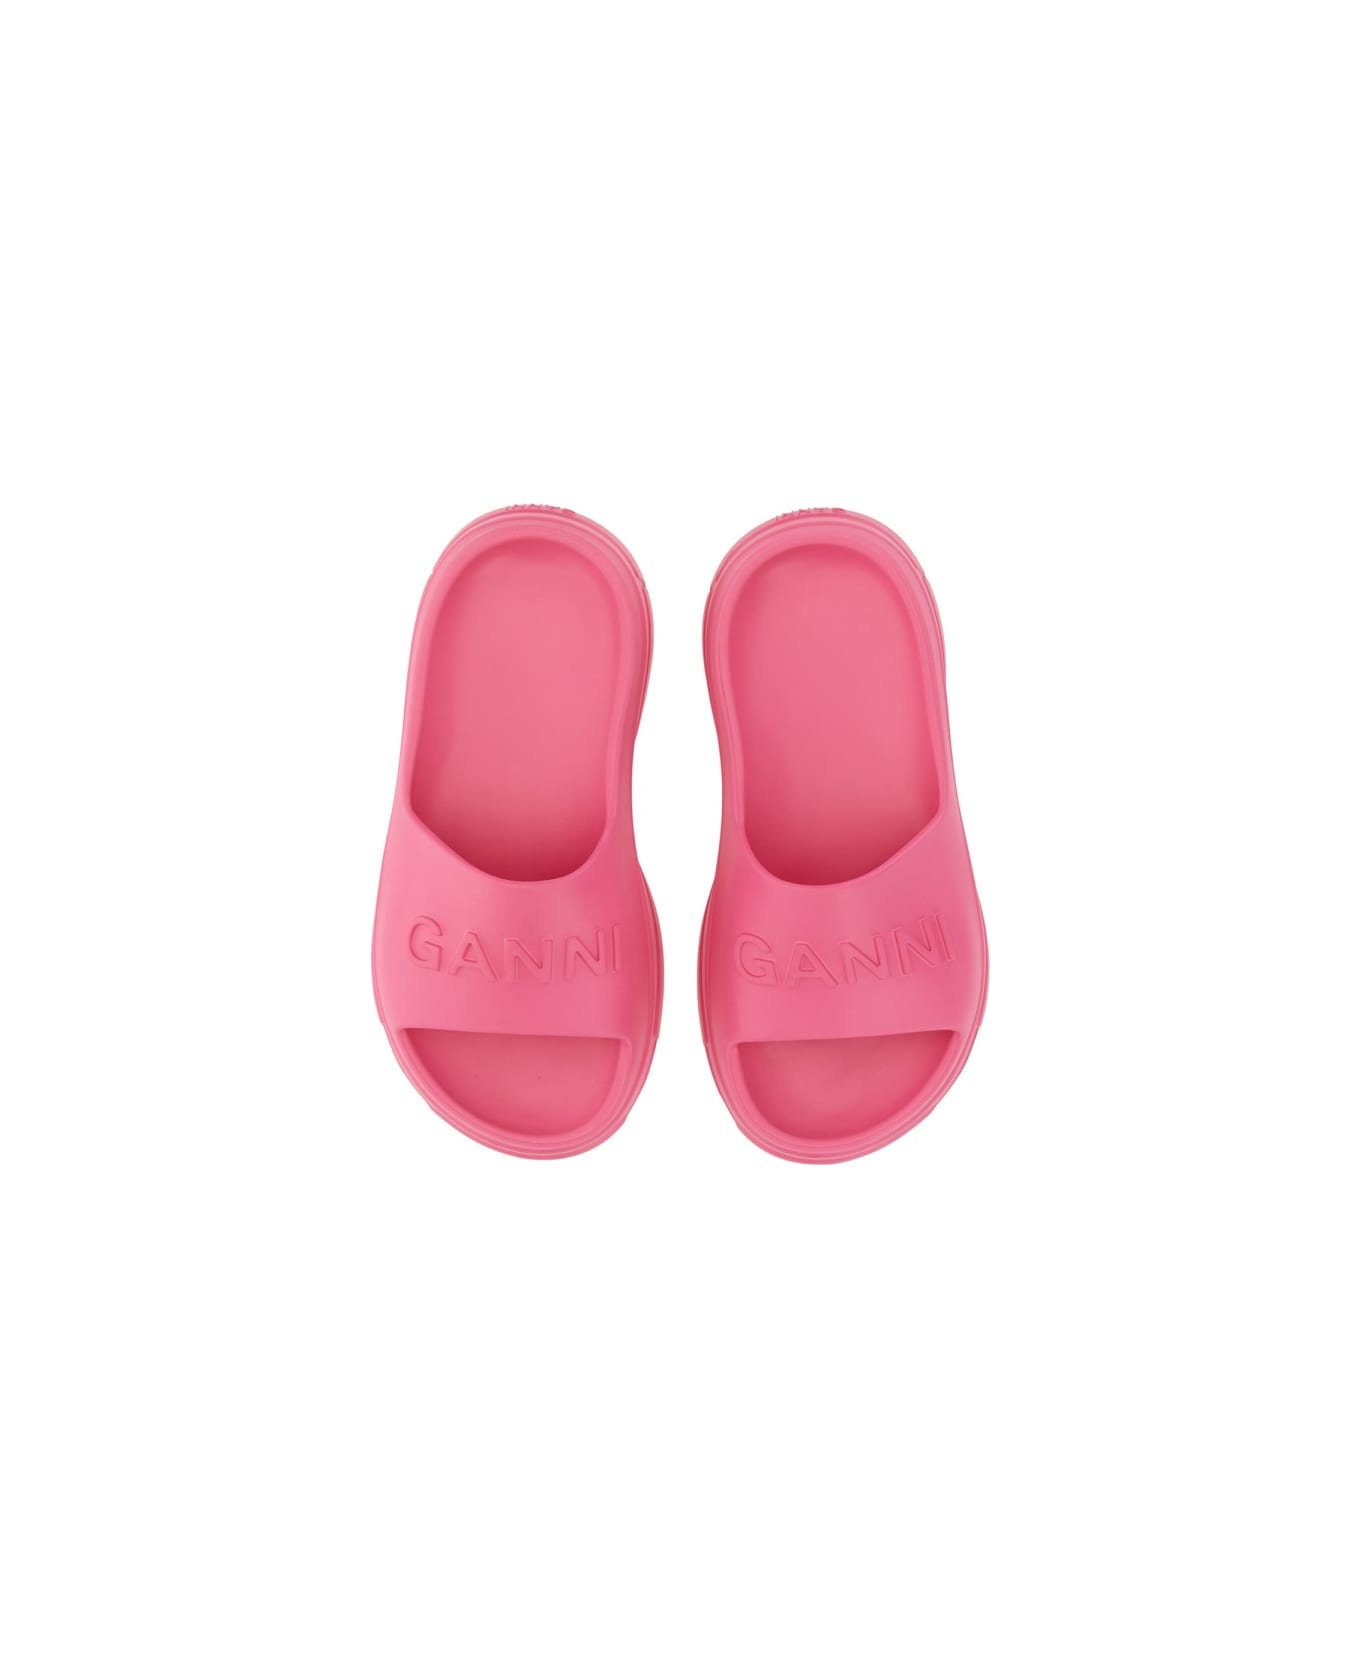 Ganni Slide Sandal With Logo - PINK